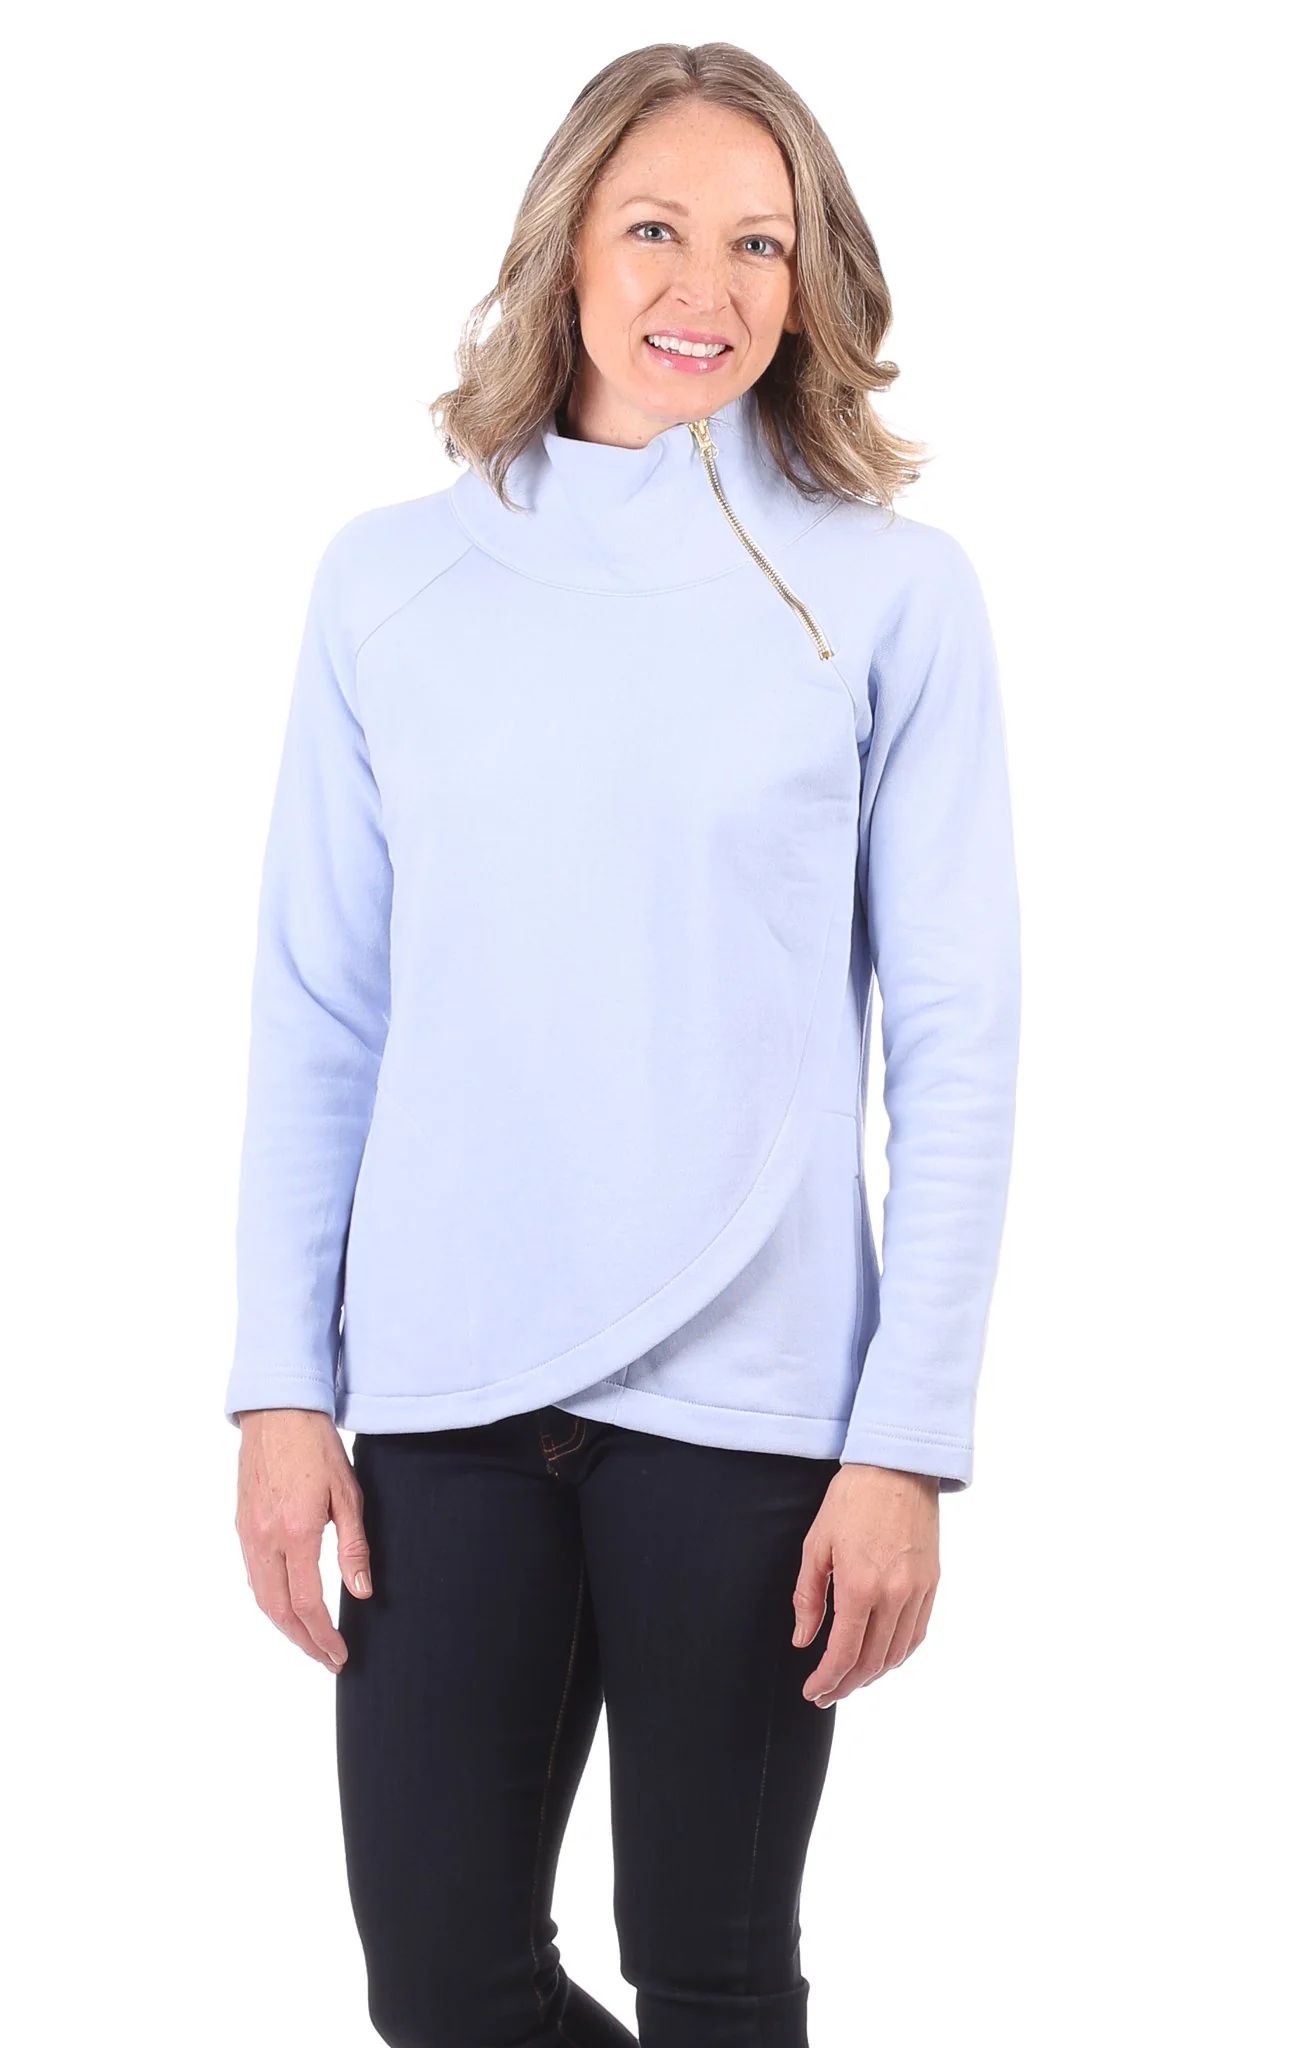 Lexington Sweatshirt in Ice Blue | Duffield Lane